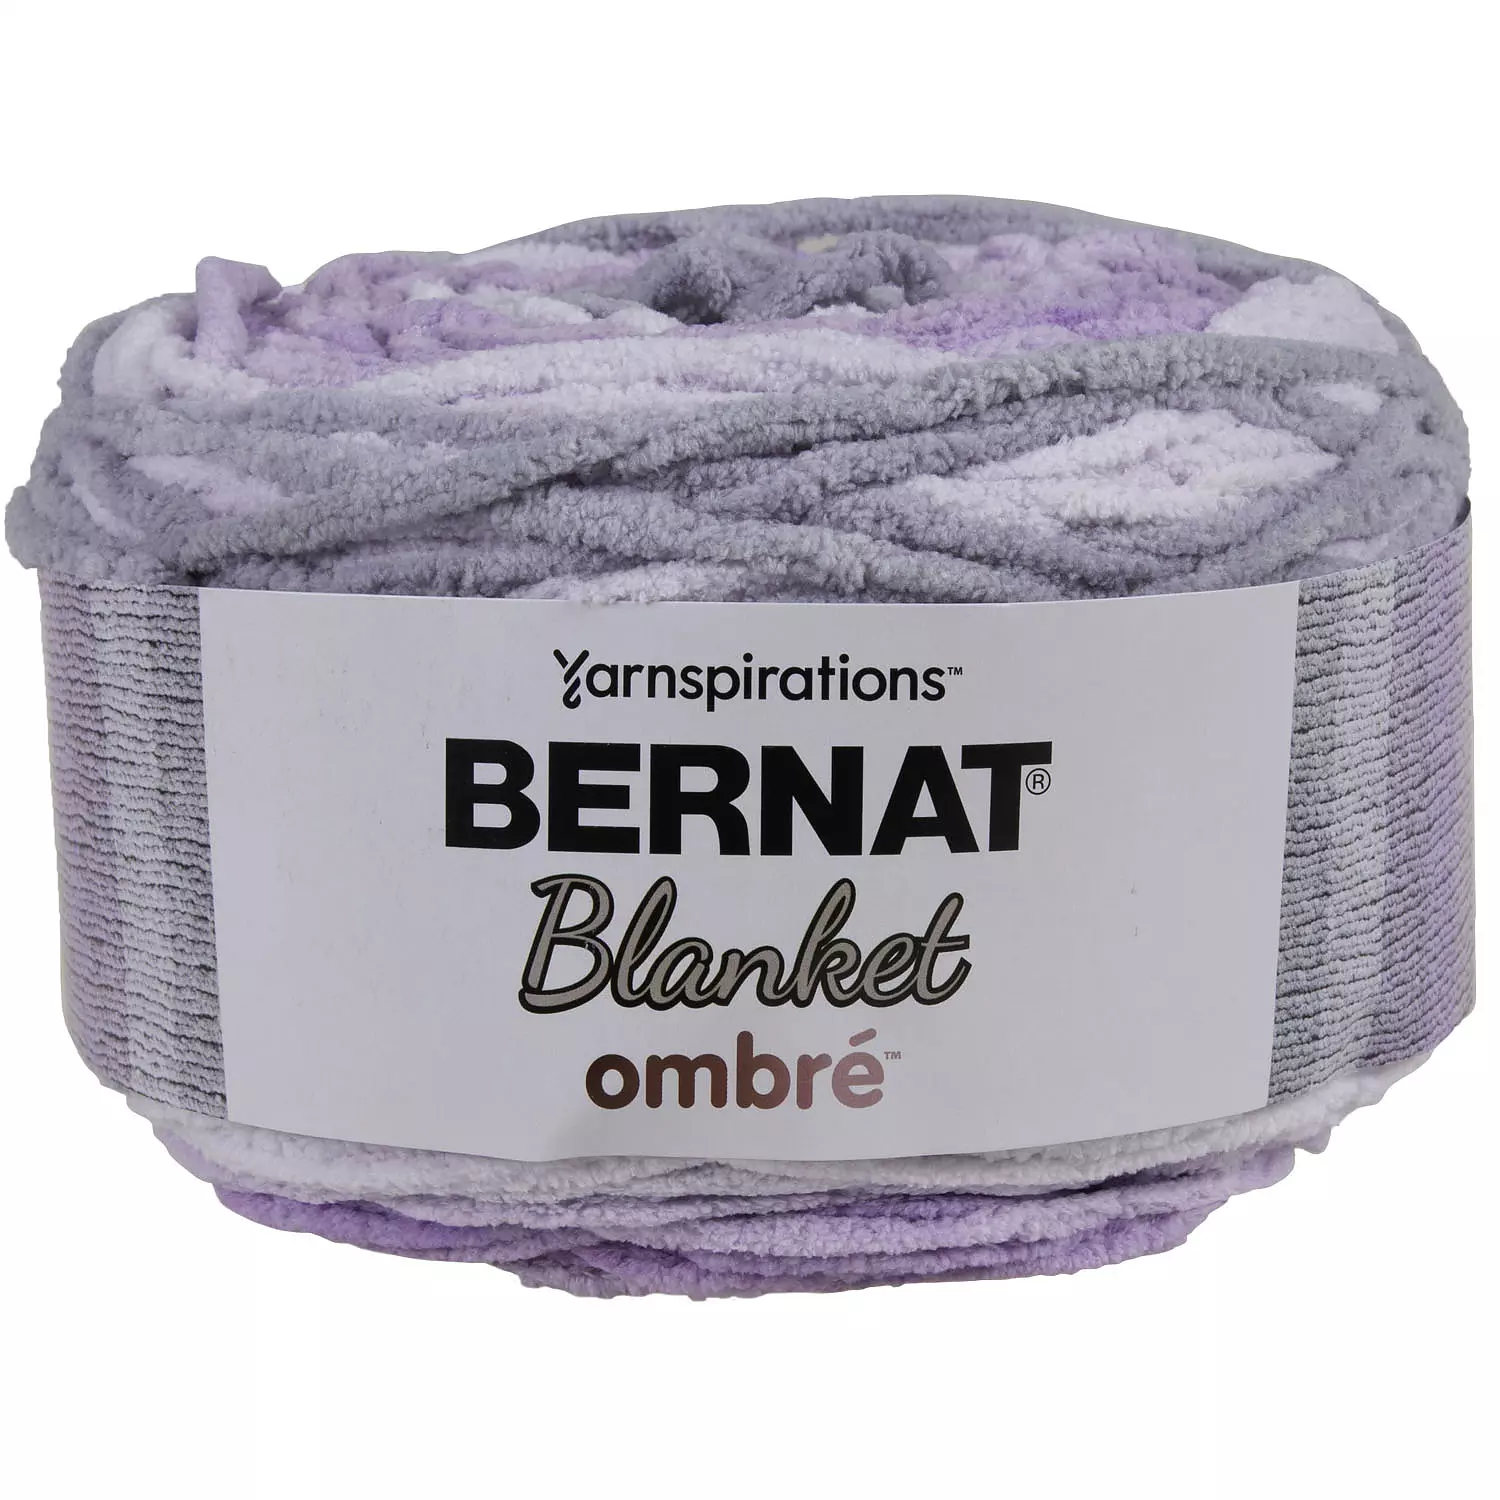 Bernat Blanket Ombré - Yarn, cool purple ombré